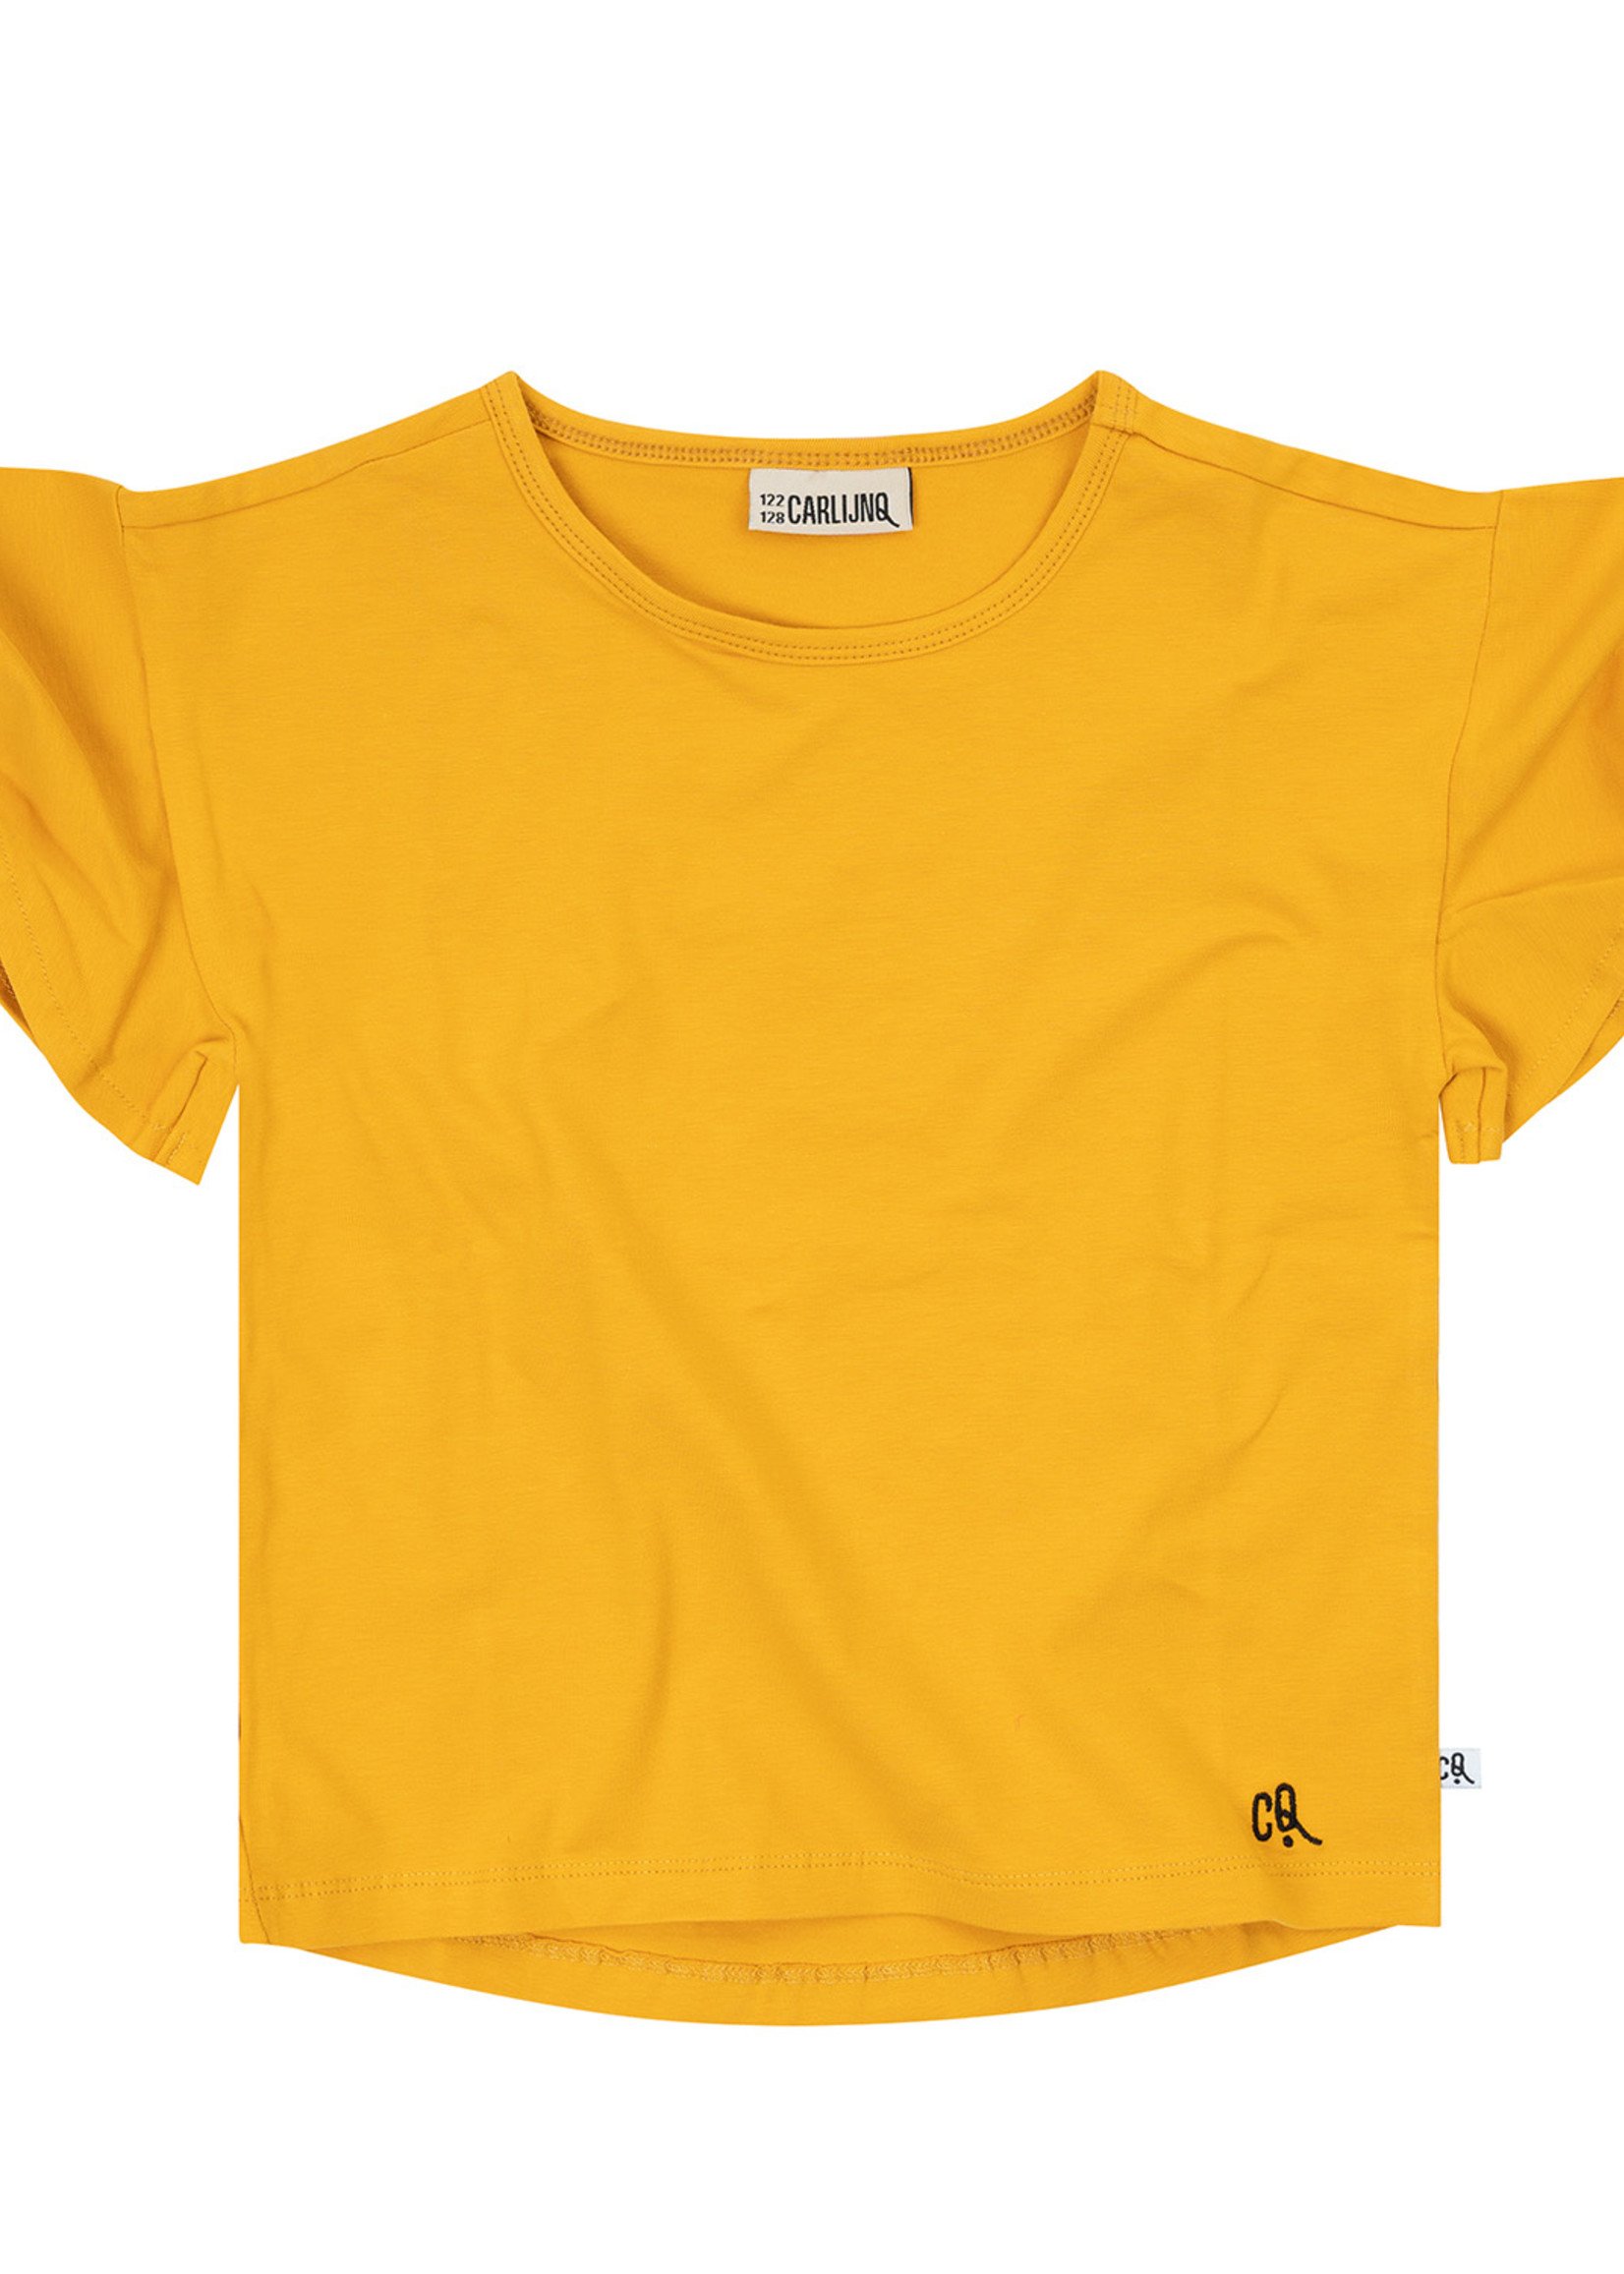 CarlijnQ Basics sun - butterfly shirt